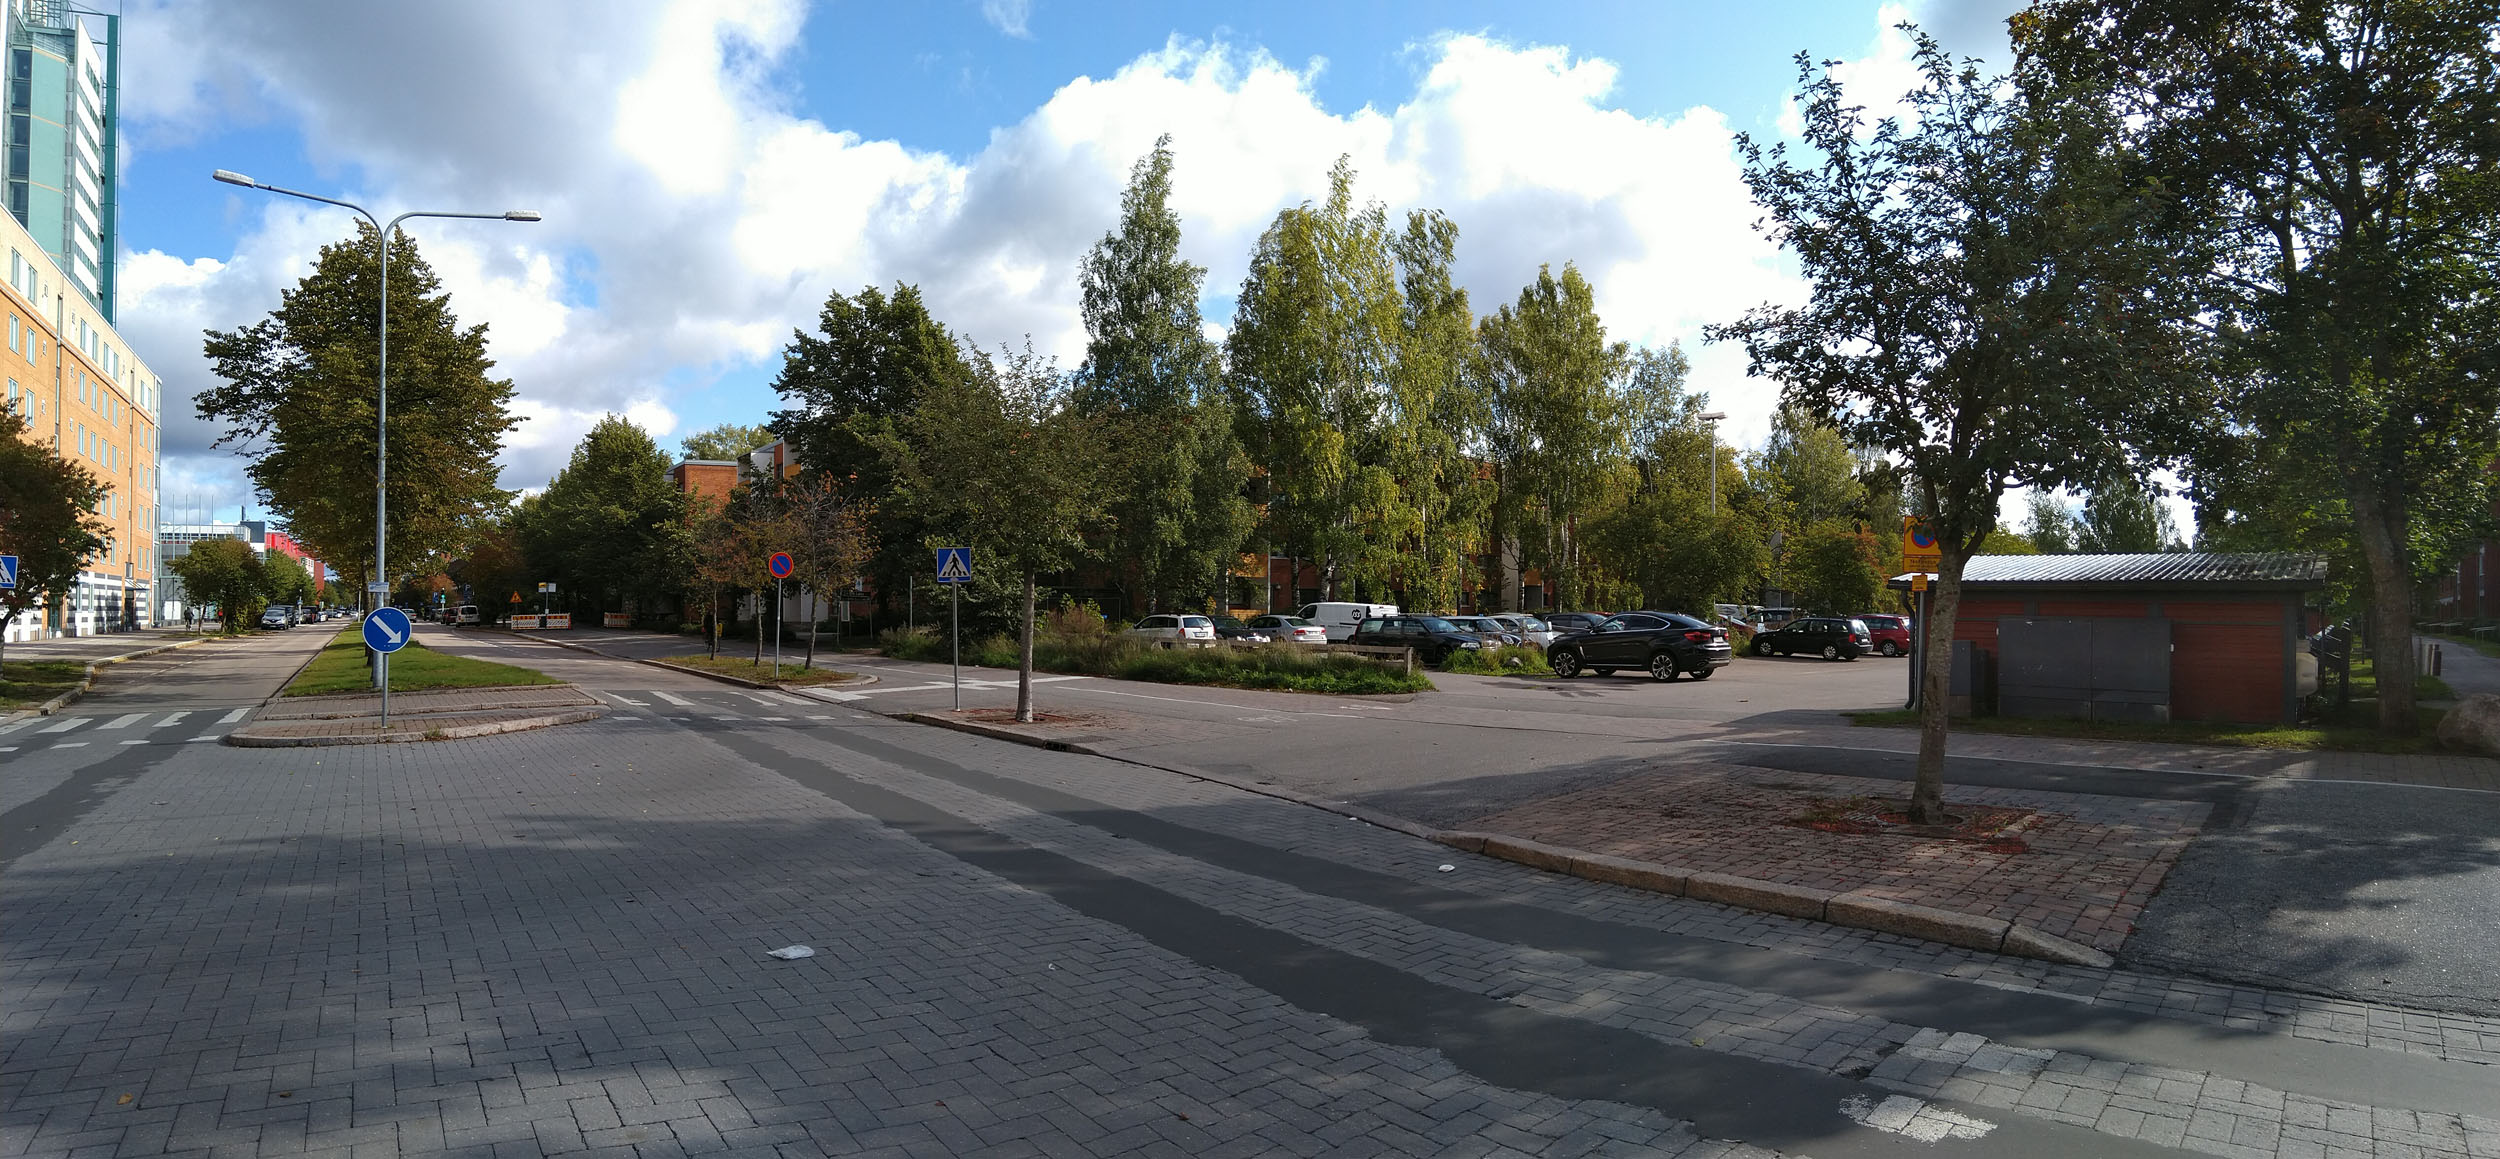 HASO Ystavyydenpuisto, Itäkeskus 22. 9. 2019